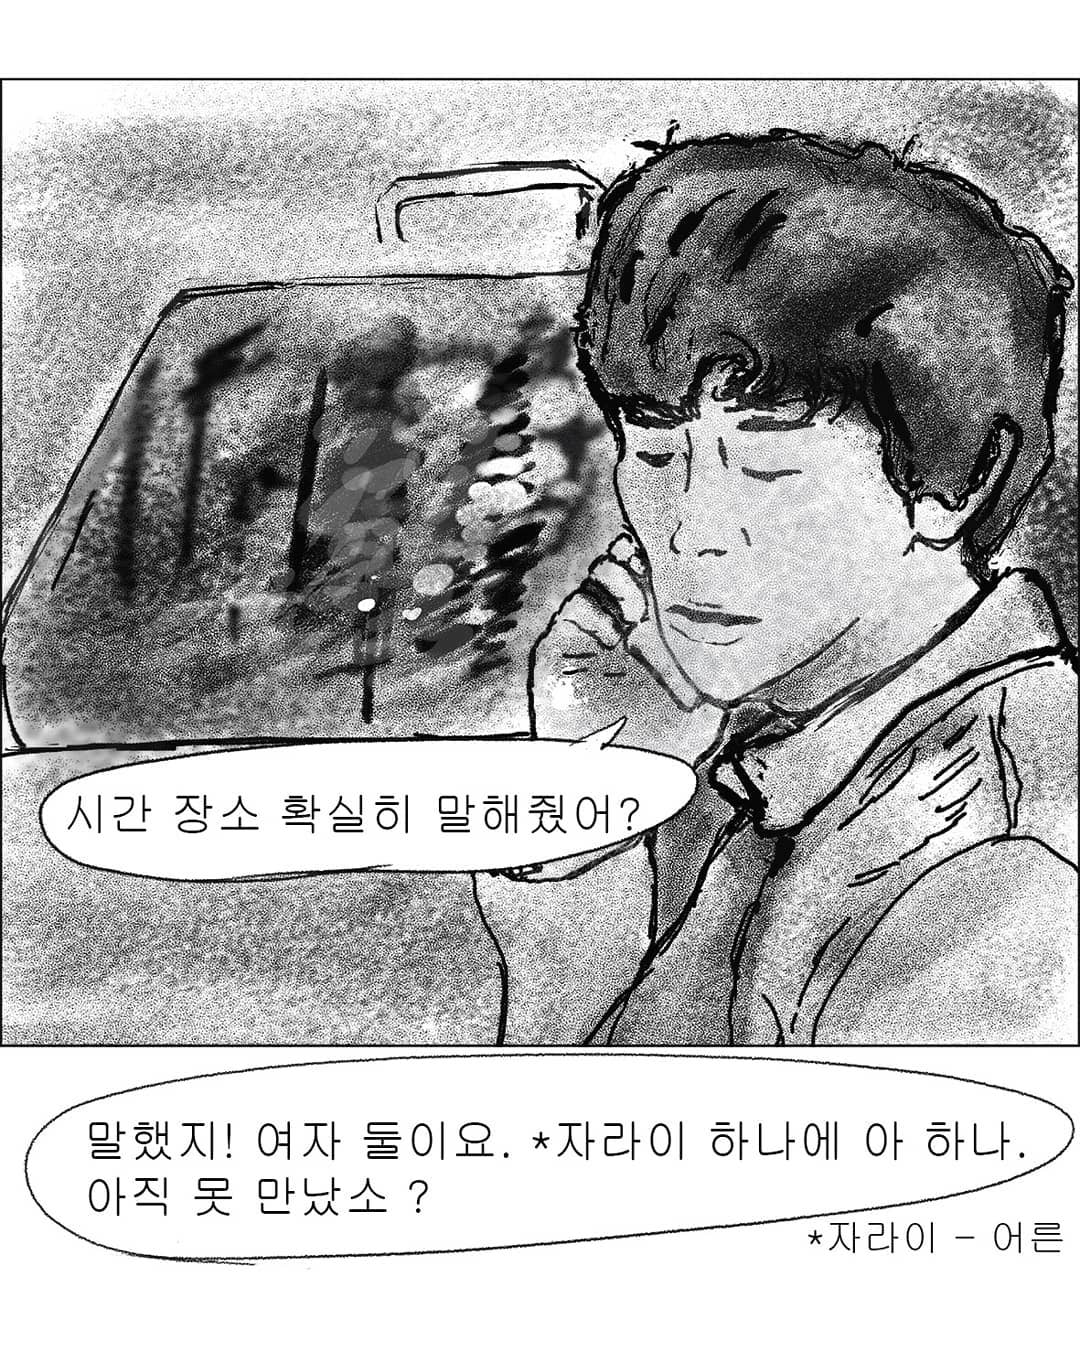 2019년도 인스타툰 '안까이' 장면 02